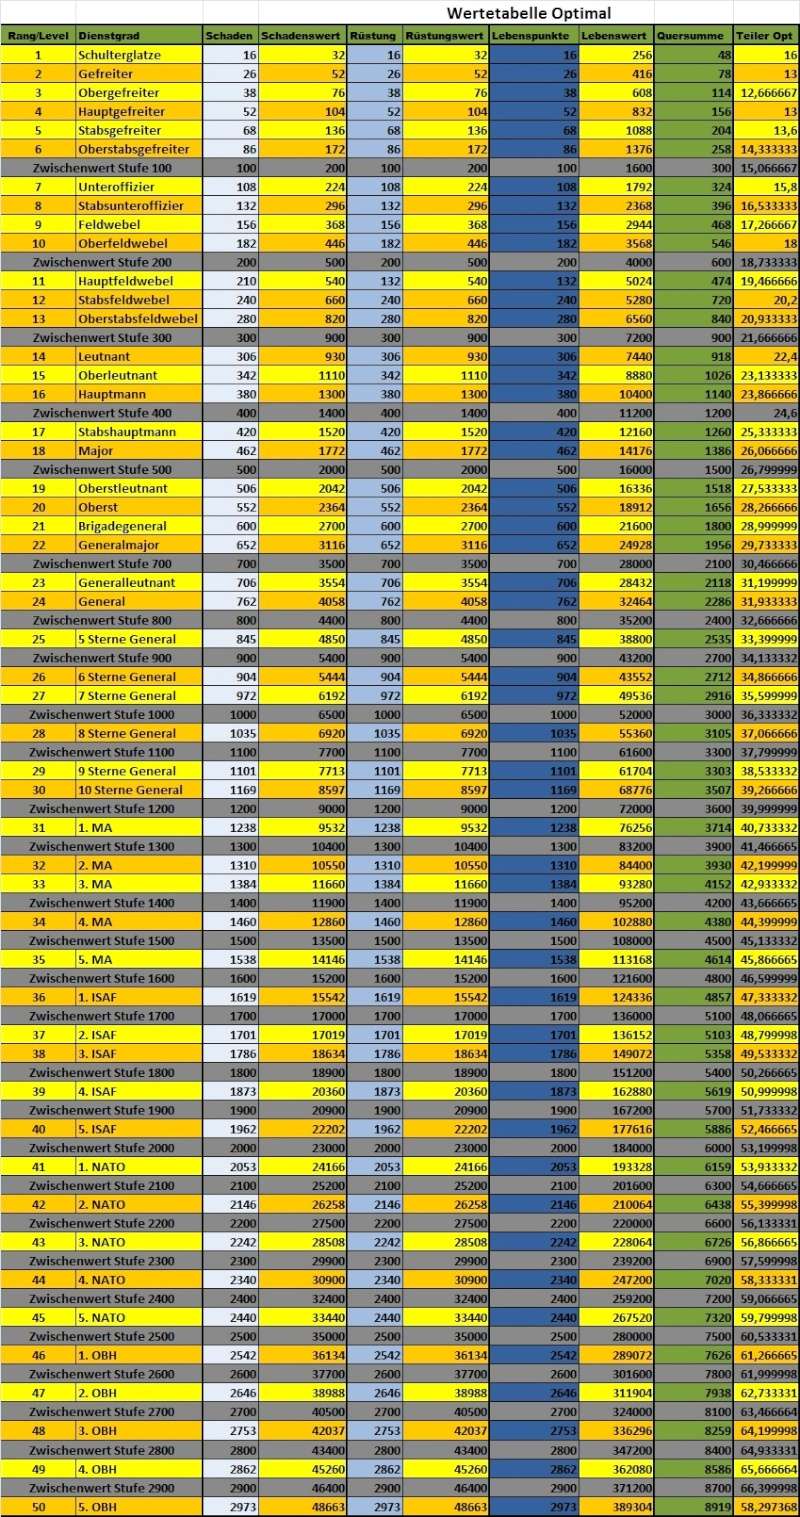 HiBa-Werten-Tabelle Wertet22